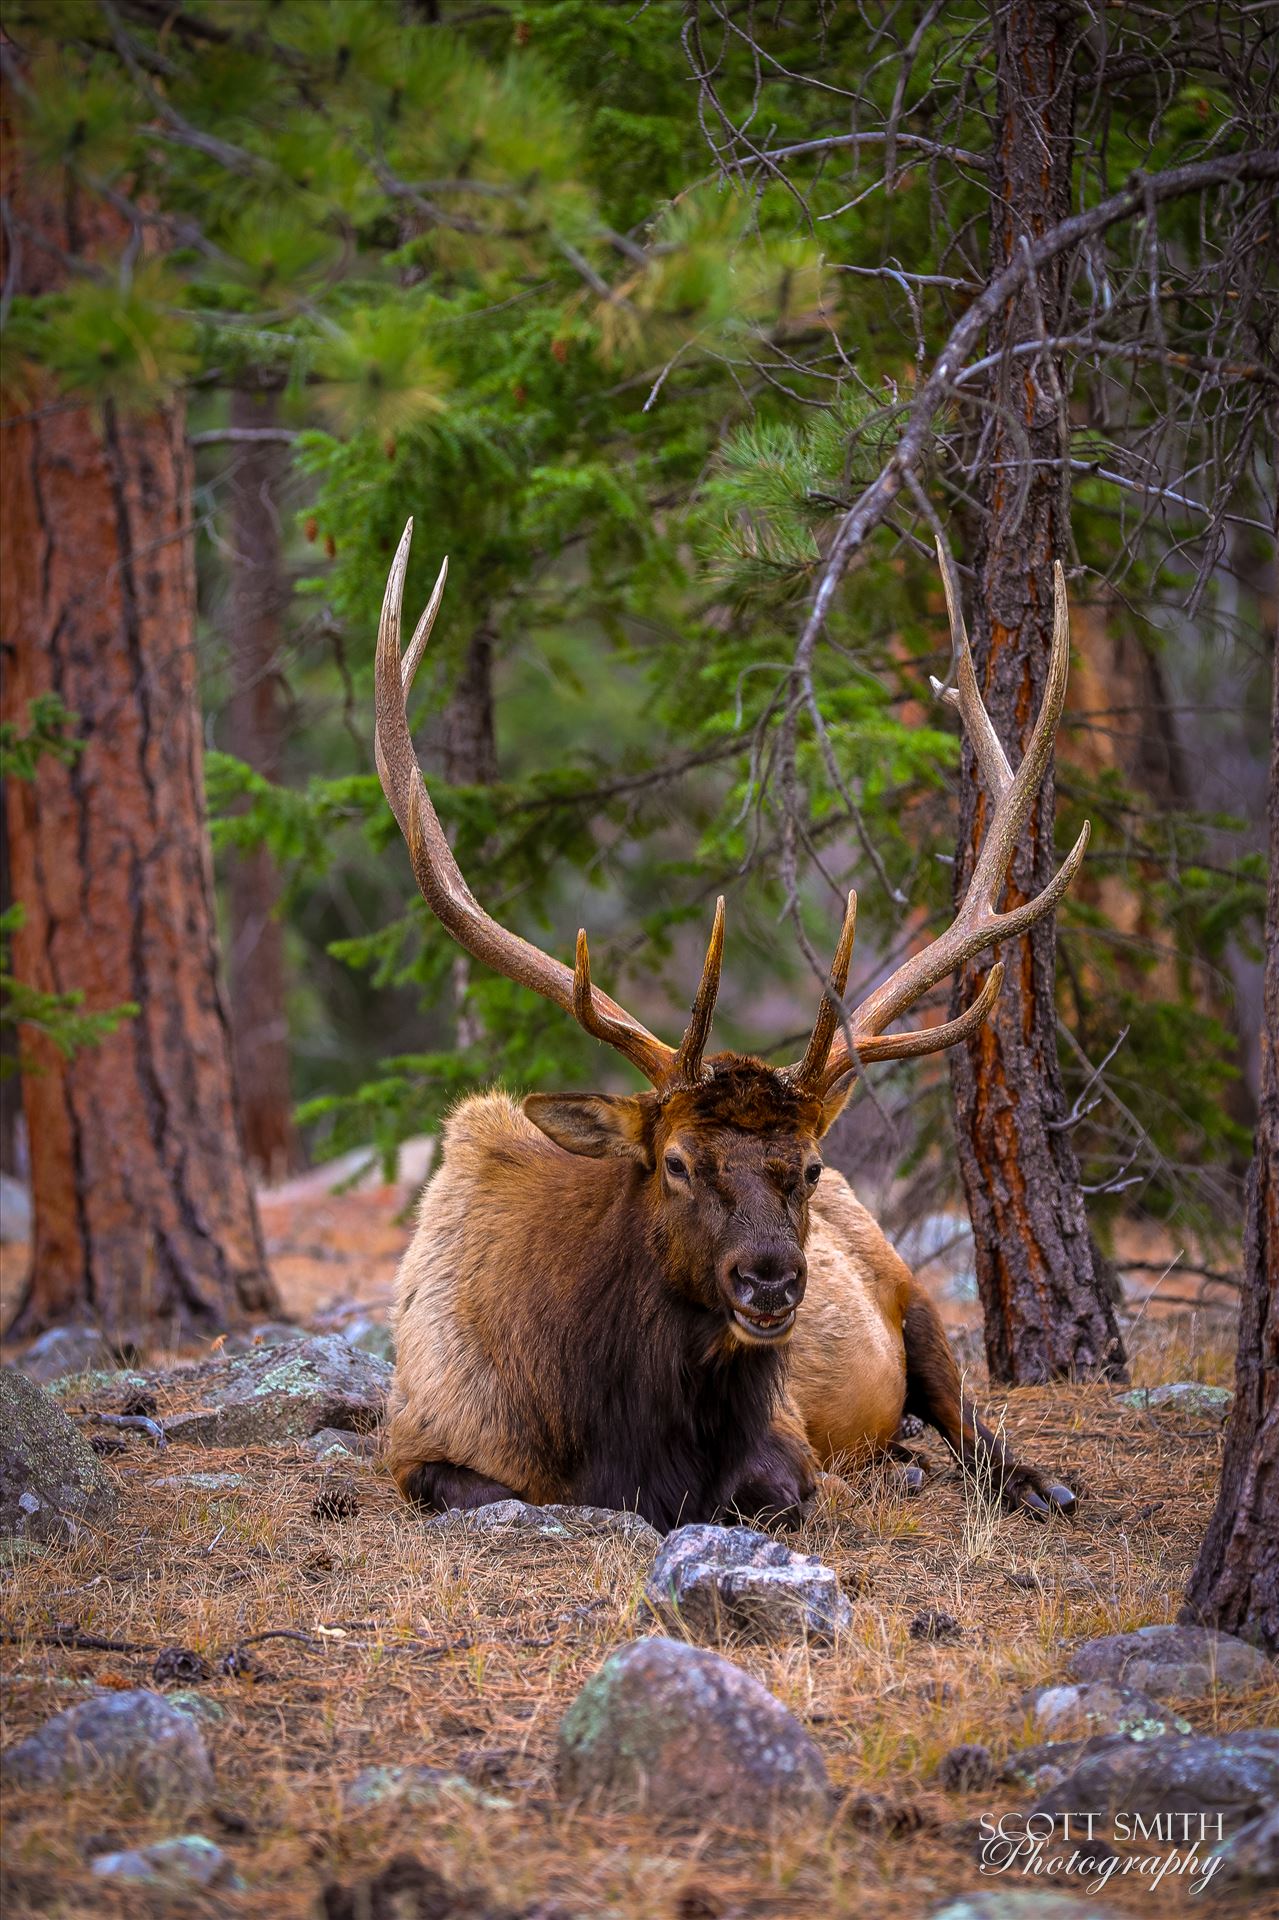 Sunday Elk No 07 - A heard of Elk near the entrance to Rocky Mountain National Park, Estes Park, Colorado. by Scott Smith Photos